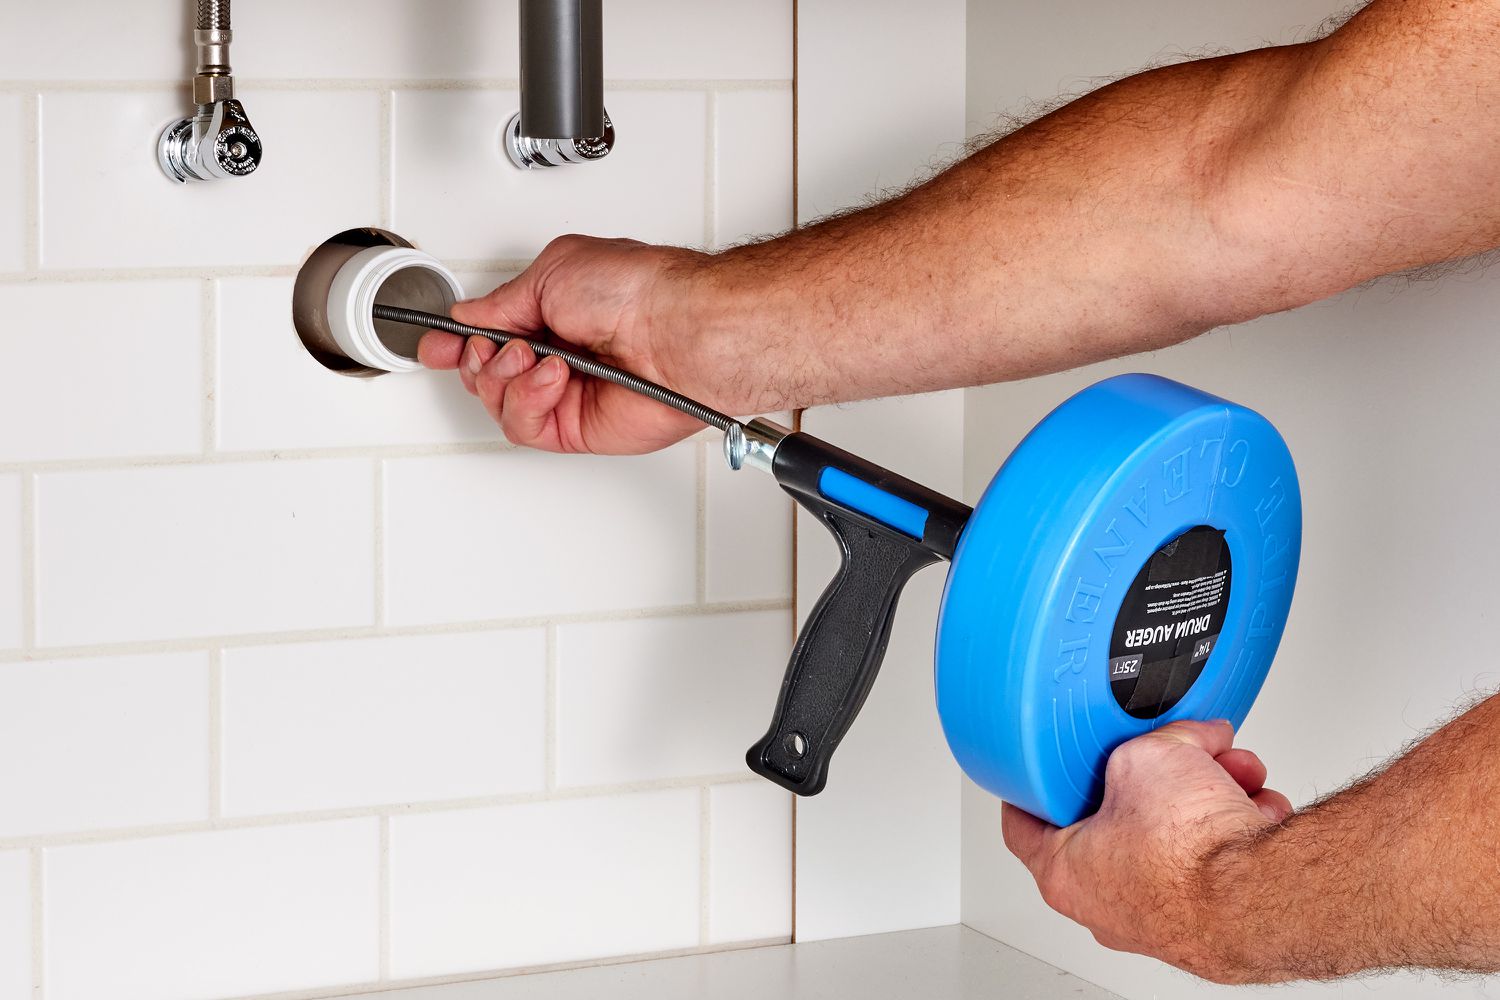 Handheld auger handle turned inside sink drain for unclogging